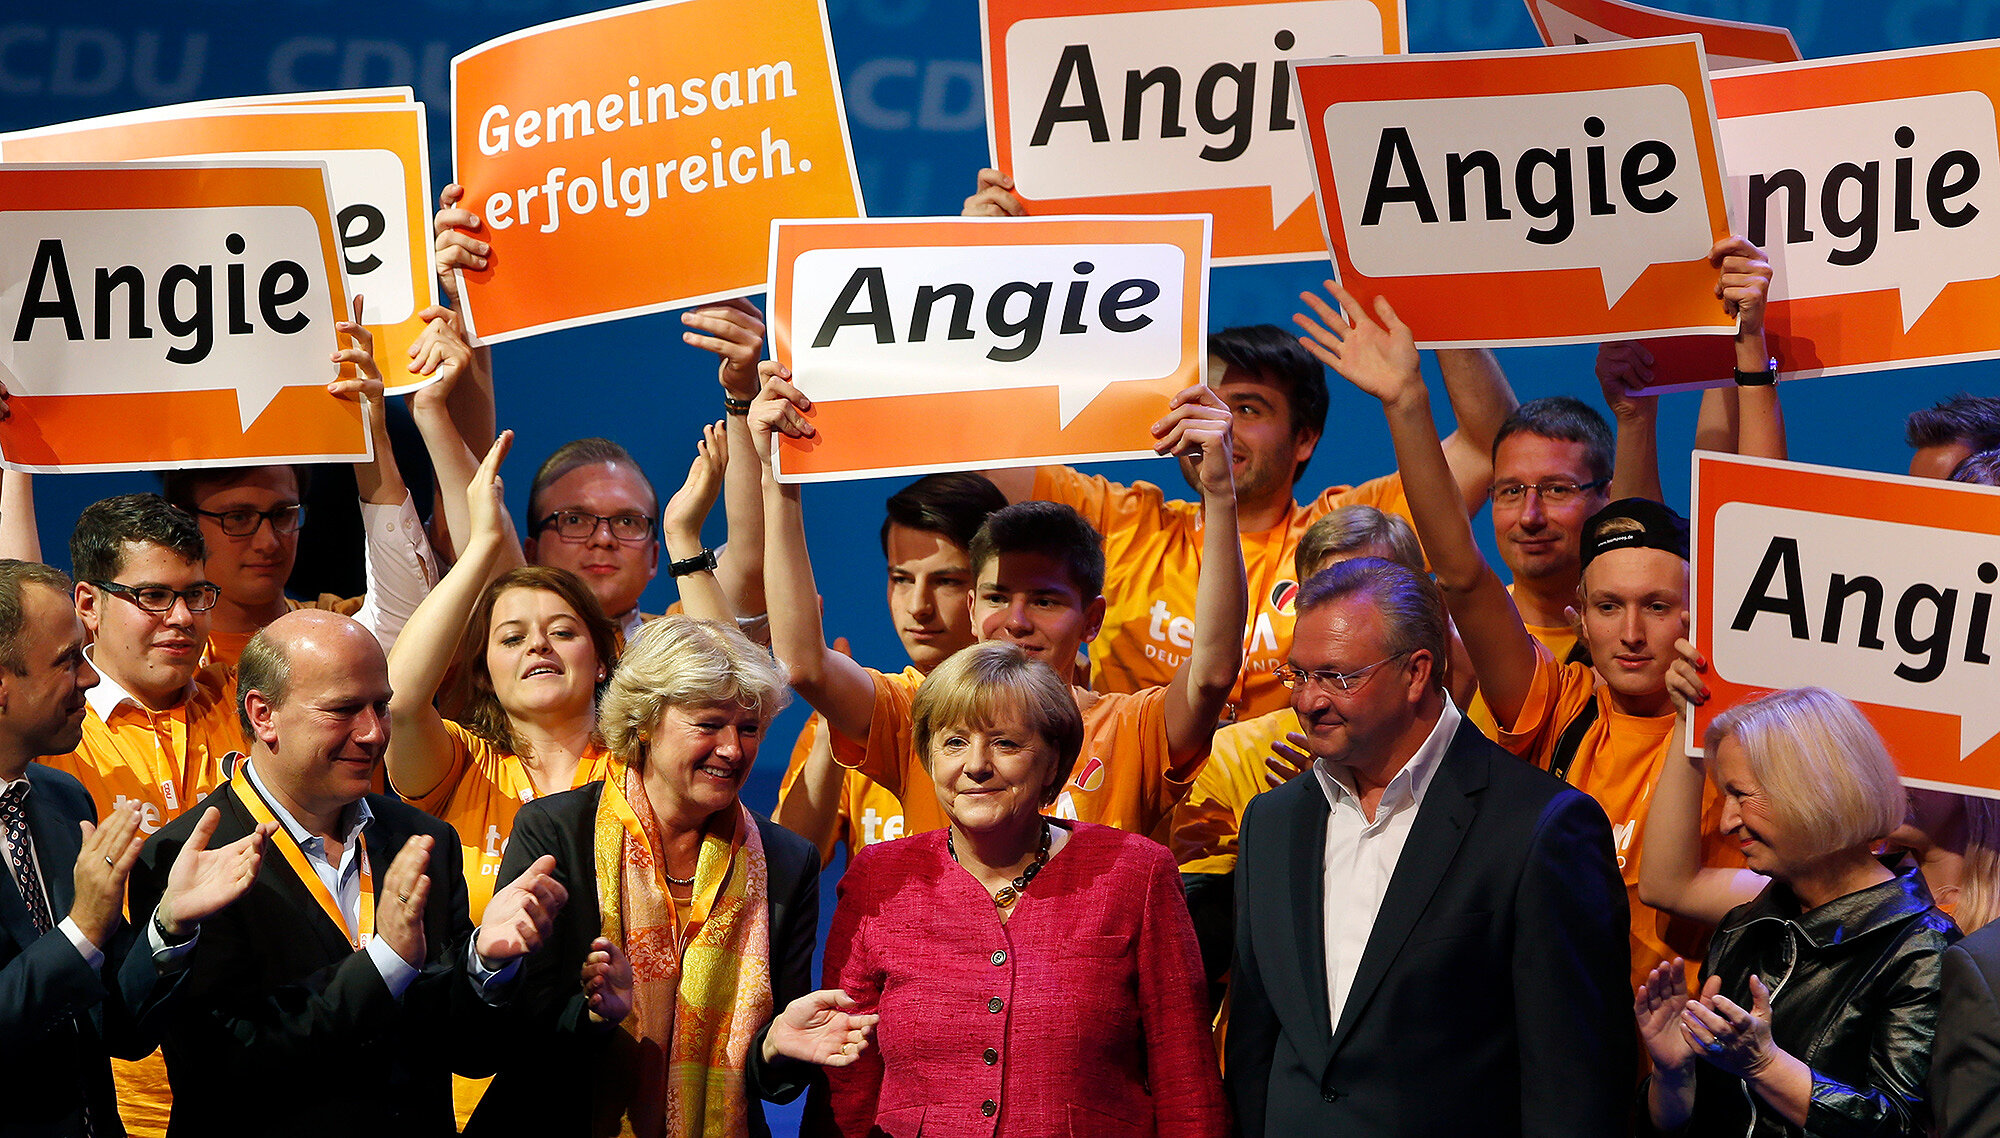 <p>Меркель со сторонниками, которые держат надписи &laquo;Энджи&raquo;, на съезде ХДС в ходе избирательной кампании, 21 сентября 2013 года</p>

<p>Еще в 2005 году маркетологи ХДС перед выборами канцлера в качестве &laquo;главной темы&raquo; Меркель выбрали песню Angie&nbsp;группы The Rolling Stones. Ход оказался удачным, его еще раз использовали для избирательной кампании 2013 года и до сих пор используют в прессе. Но участники музыкальной группы, в свою очередь, сообщили, что их разрешения на использование песни не спрашивали, а если бы спросили &mdash; они бы <a href="https://www.theguardian.com/world/2005/aug/21/arts.germany" target="_blank">отказали</a>.</p>